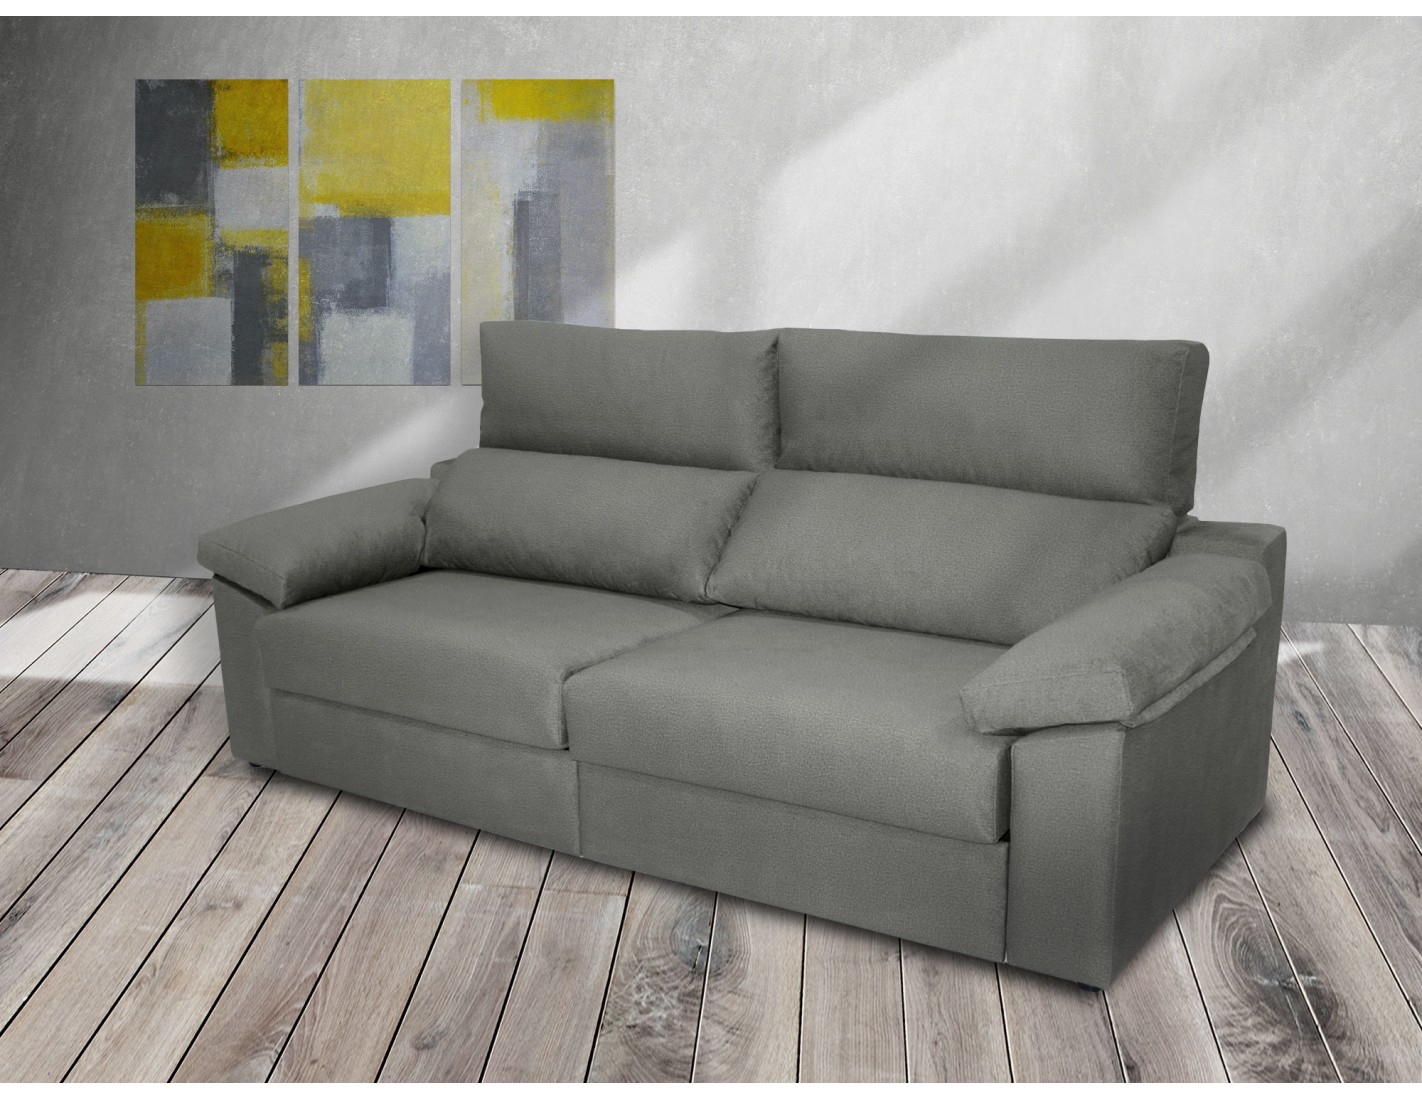 Conjunto de sofás de dos y tres plazas mod. Tallín. Los mejores sofás  baratos online.